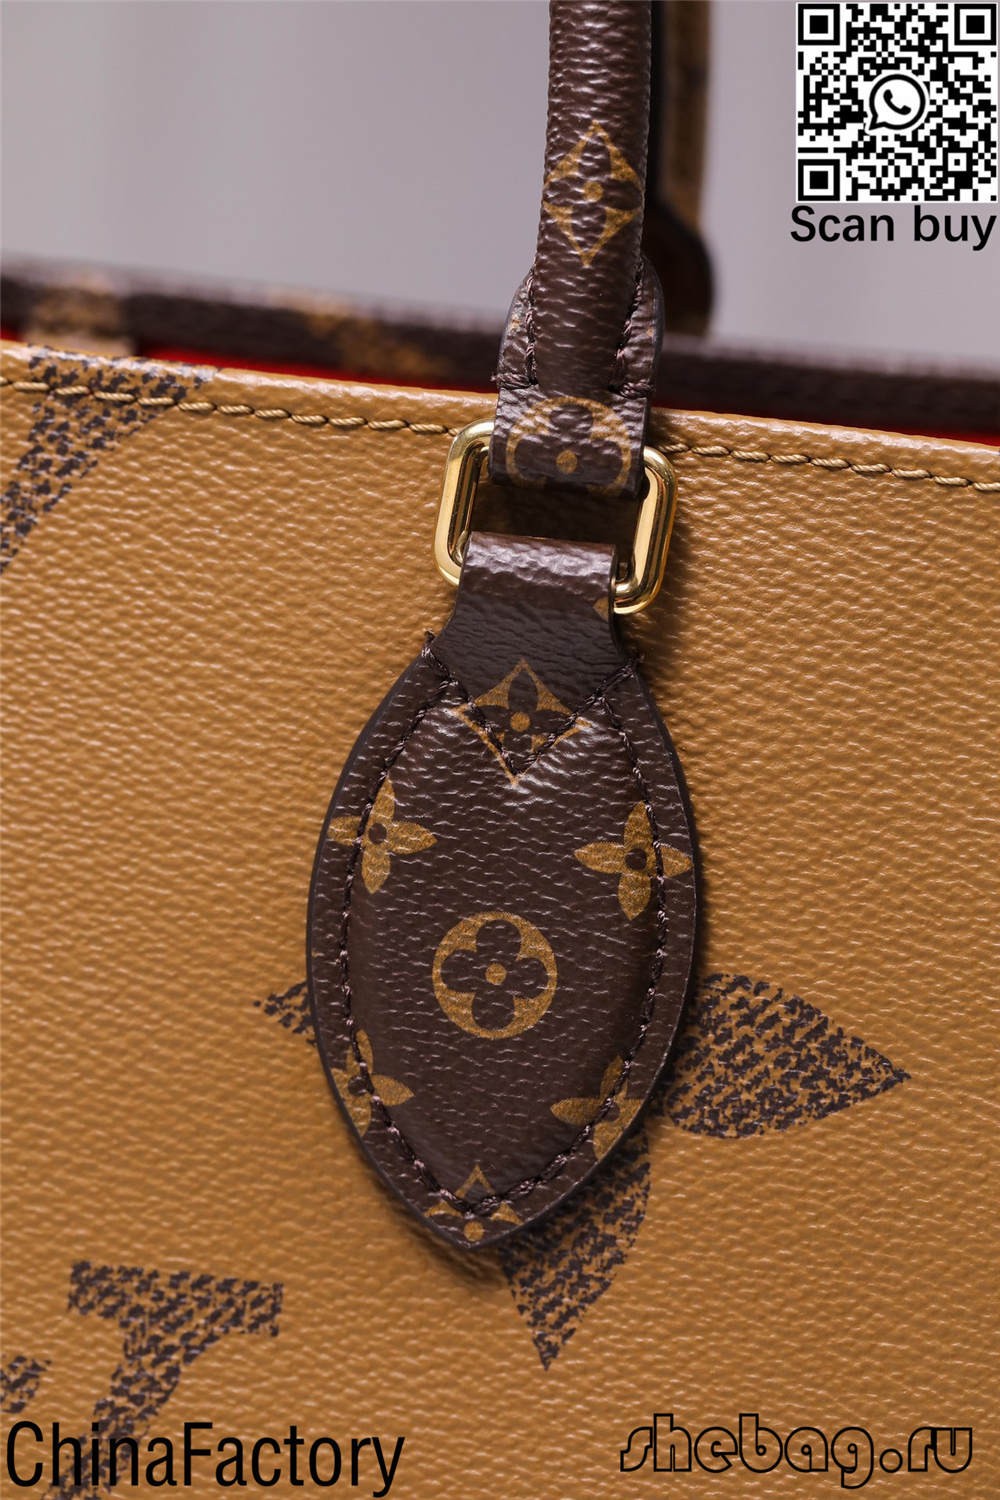 louis vitton replika väska beskrivningar och priser (2022 uppdaterad)-Bästa kvalitet Fake Louis Vuitton Bag Online Store, Replica designer bag ru